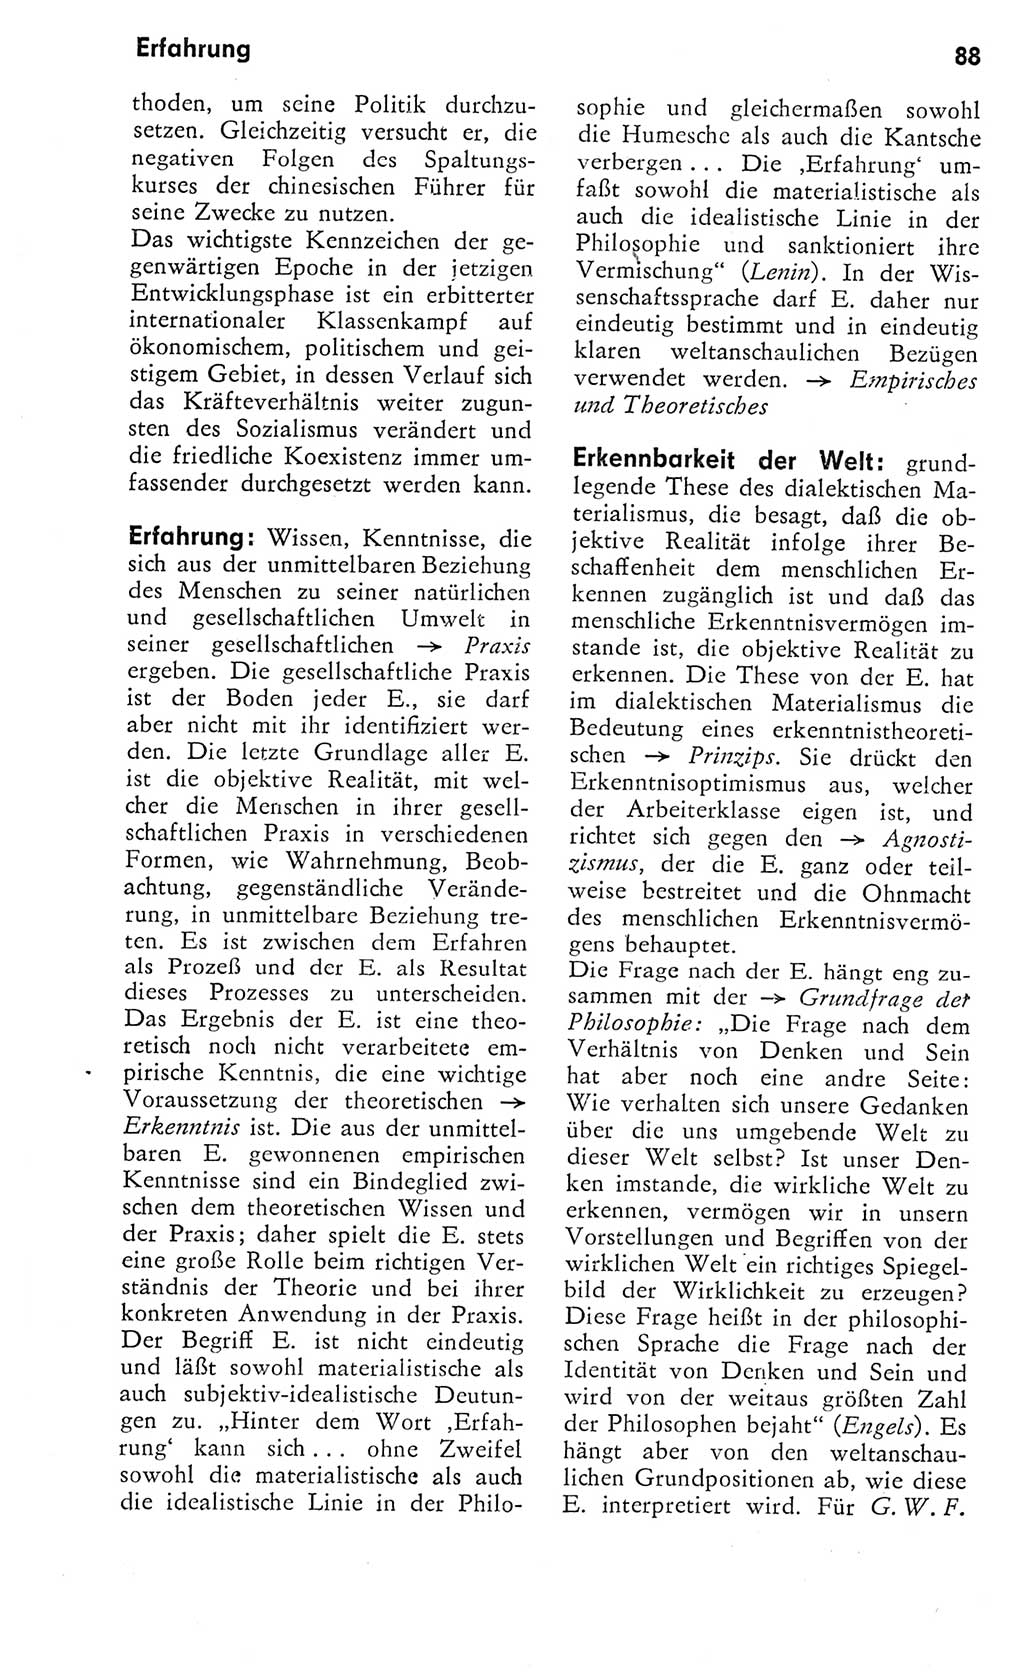 Kleines Wörterbuch der marxistisch-leninistischen Philosophie [Deutsche Demokratische Republik (DDR)] 1975, Seite 88 (Kl. Wb. ML Phil. DDR 1975, S. 88)